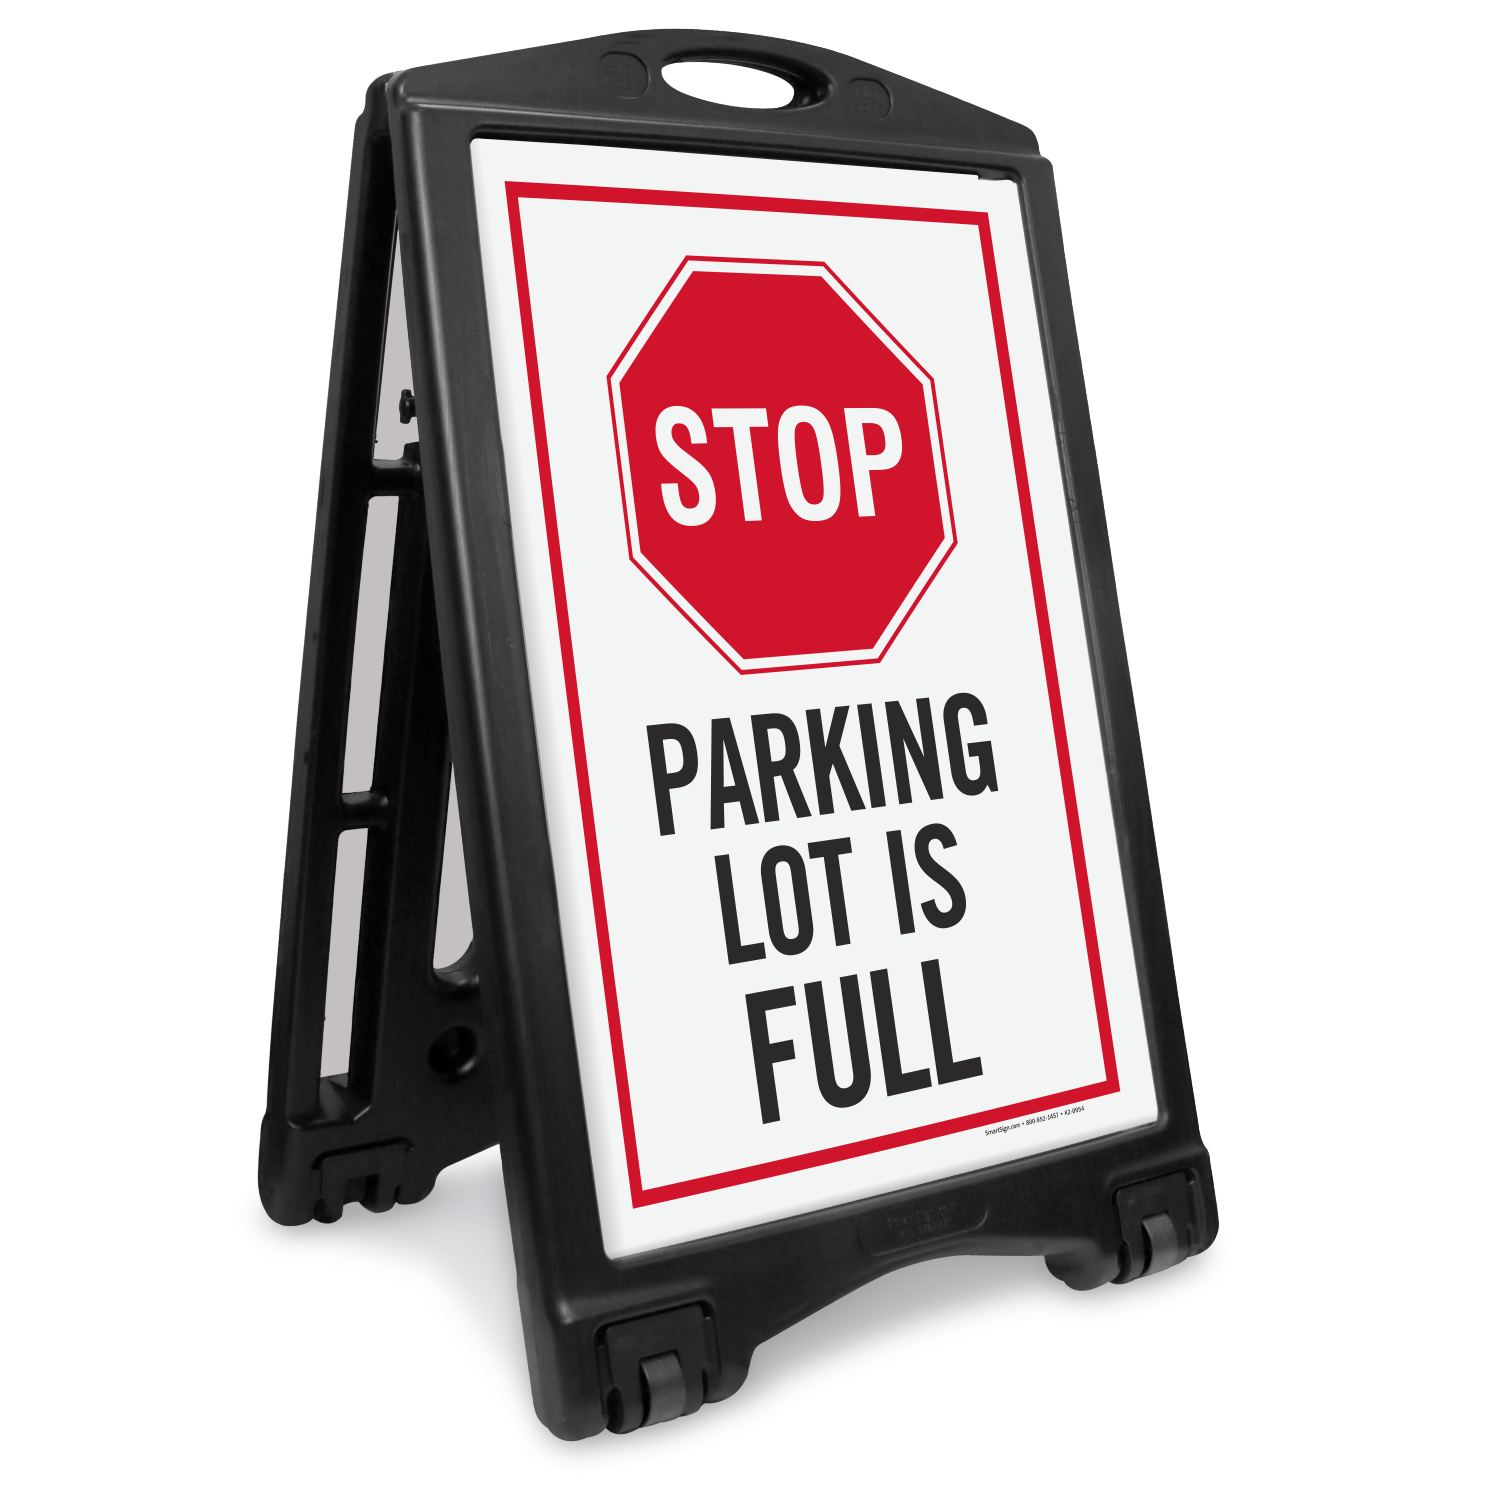 parking garage signs